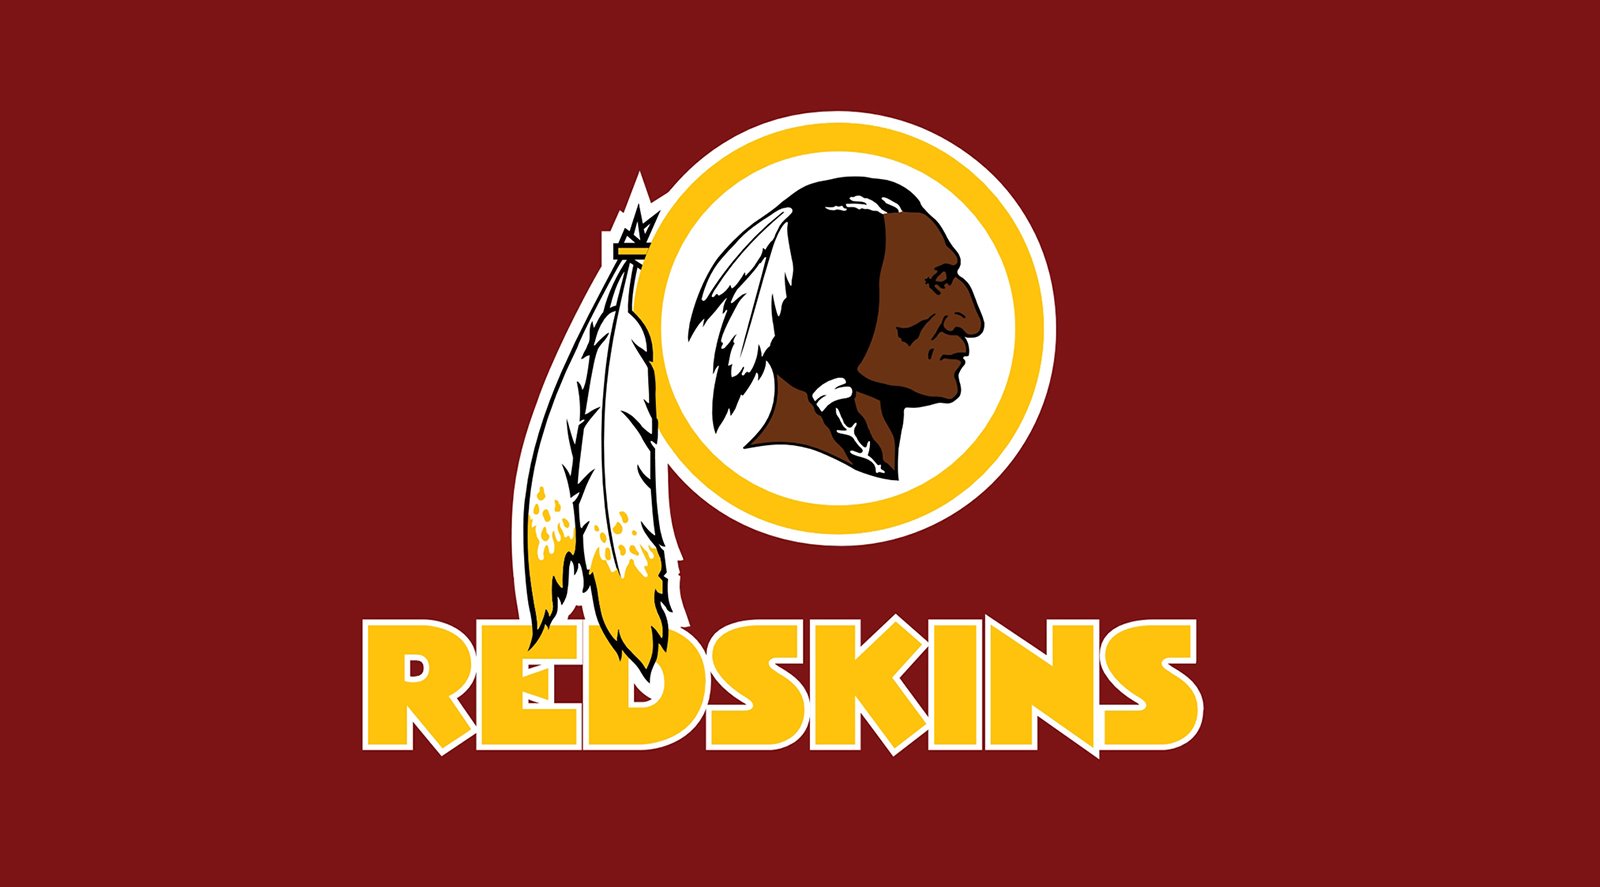 Redskins logo histoire et signification, evolution, symbole Redskins